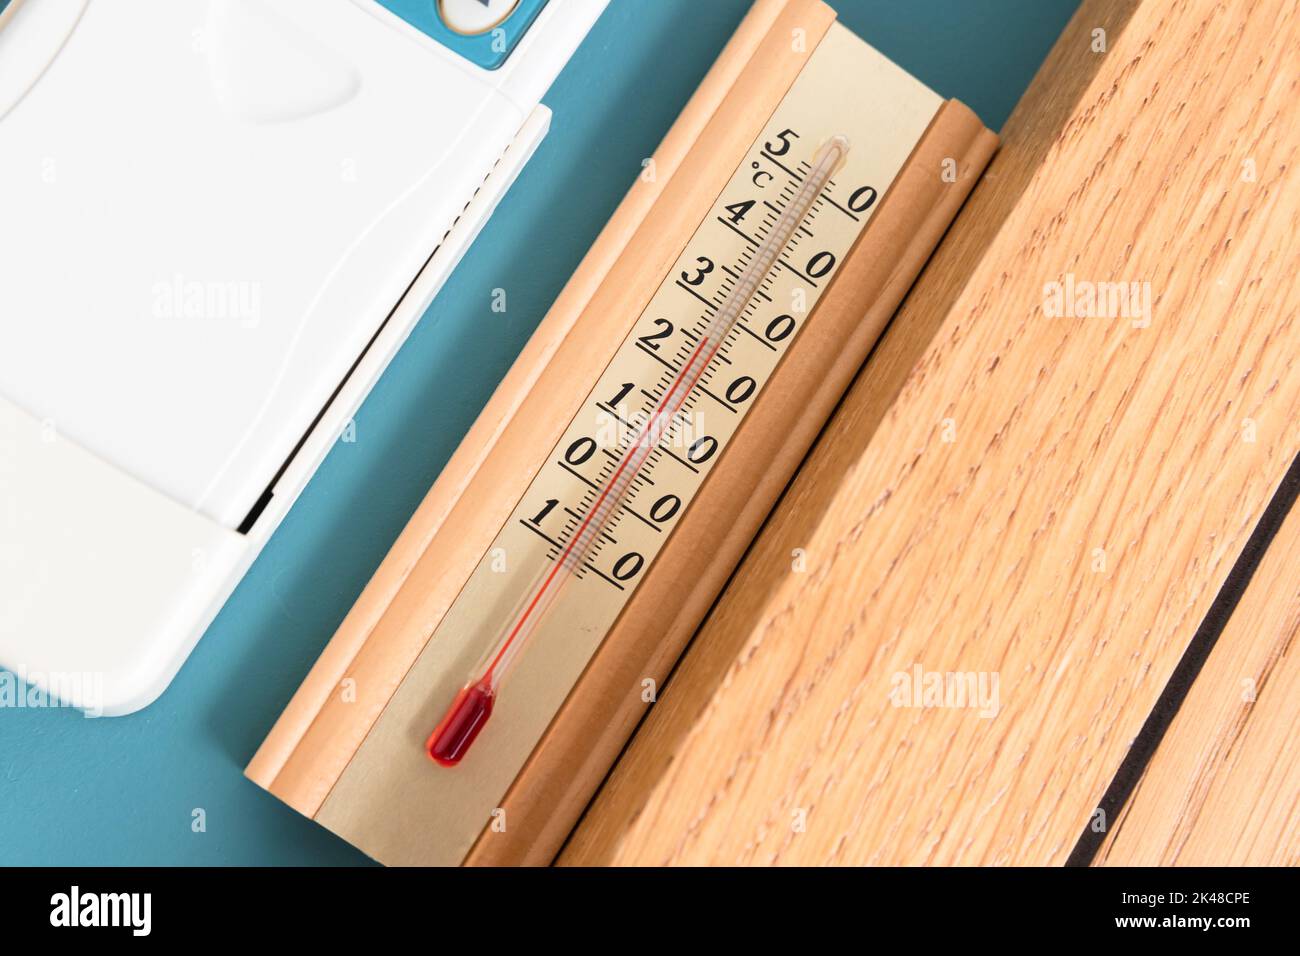 Haushaltsalkoholthermometer, das die Temperatur in Grad Celsius anzeigt, befindet sich an der blauen Wand, Nahaufnahme Stockfoto